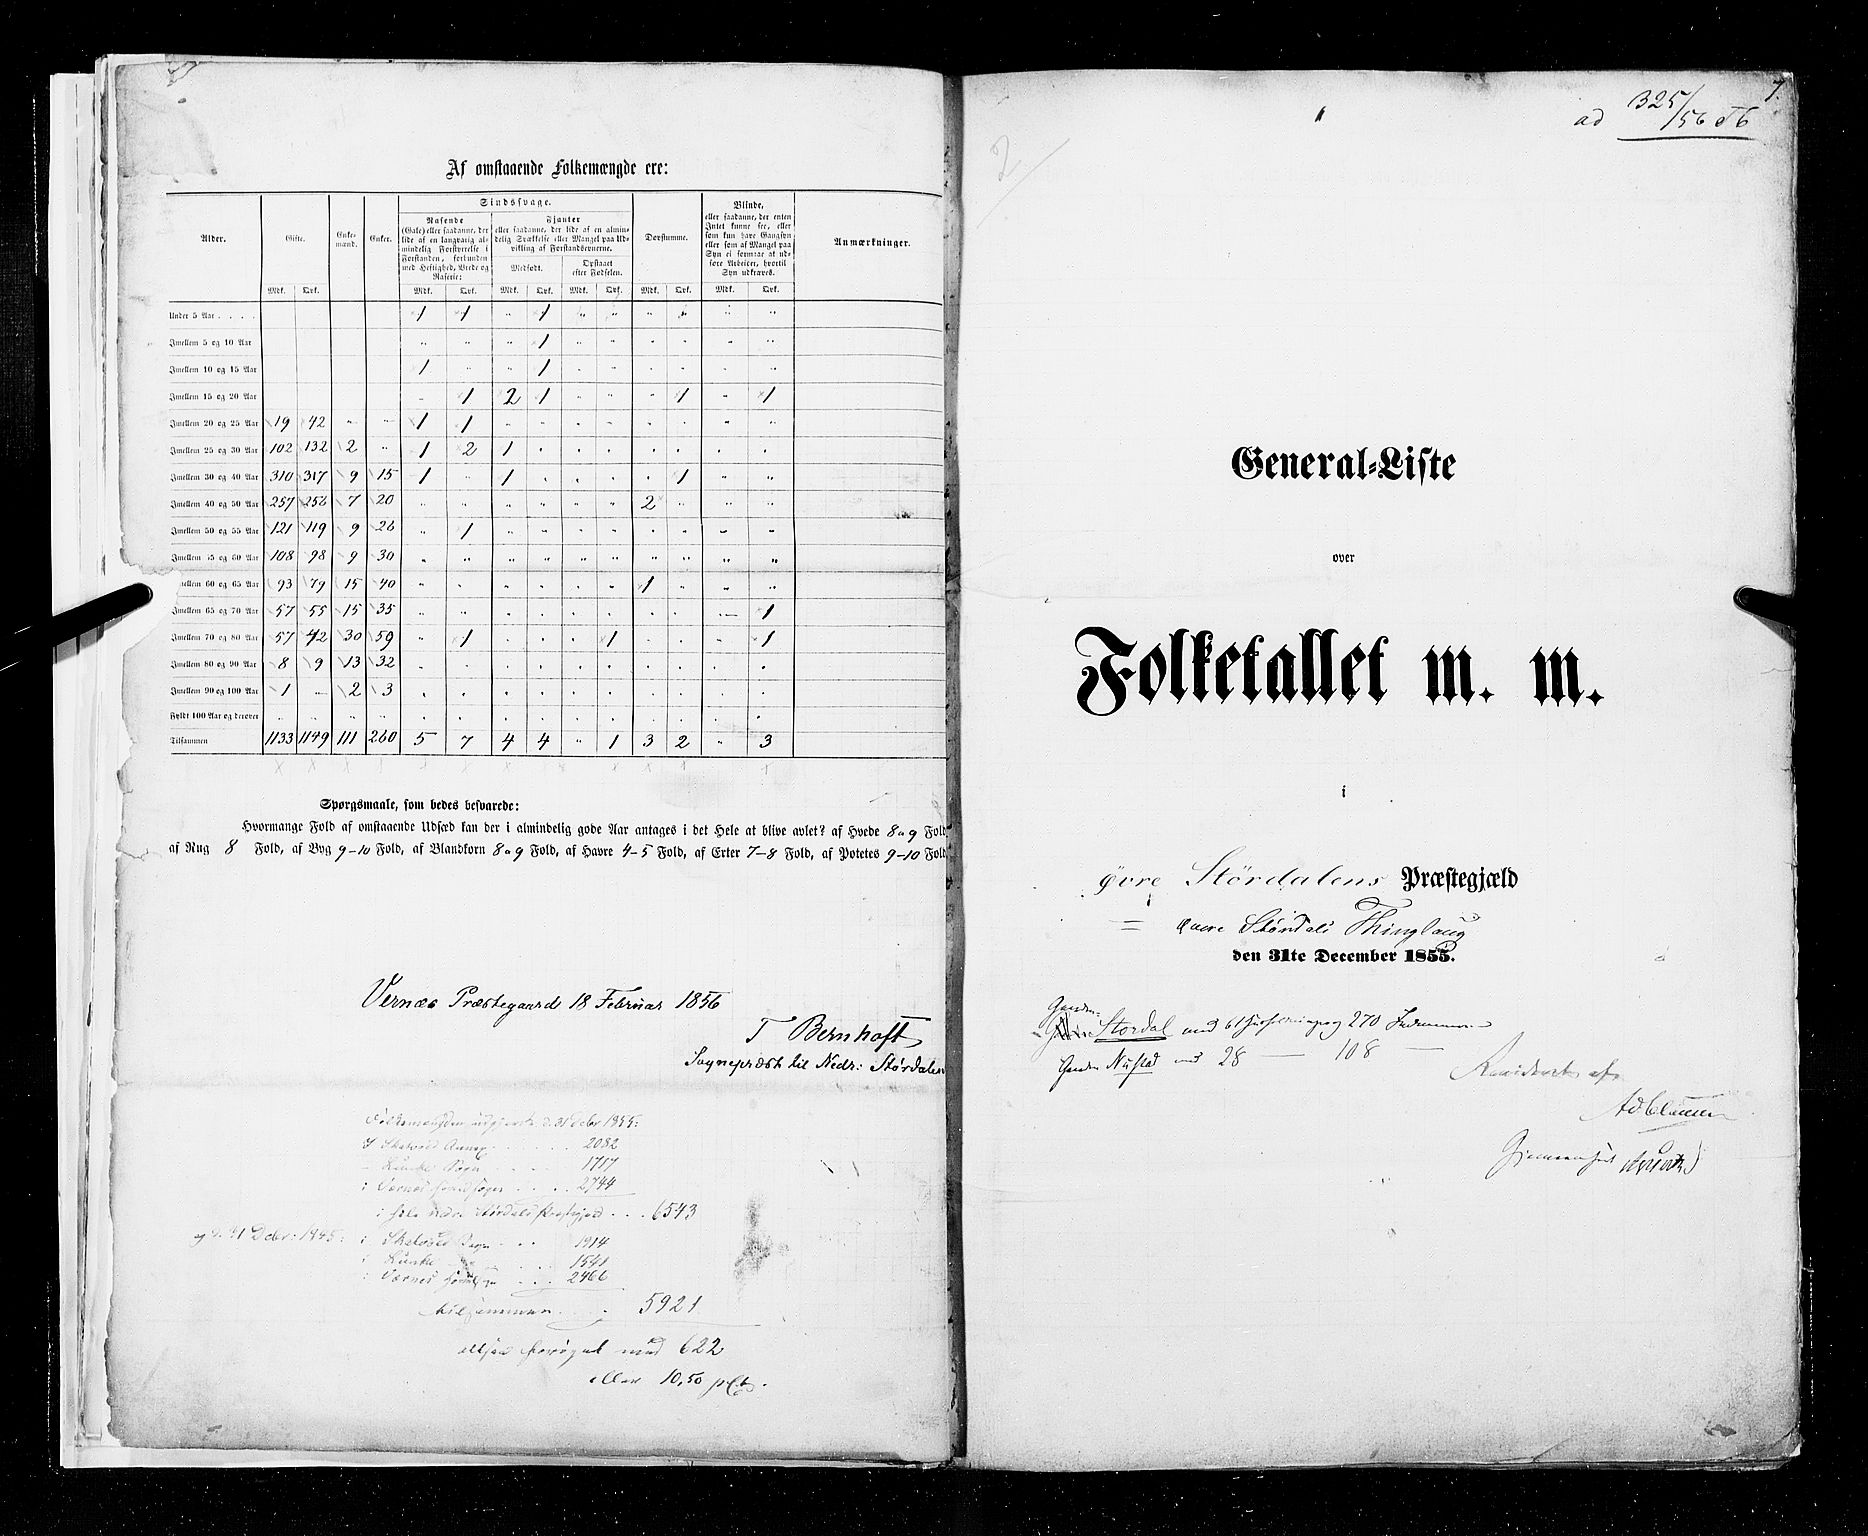 RA, Census 1855, vol. 6A: Nordre Trondhjem amt og Nordland amt, 1855, p. 7